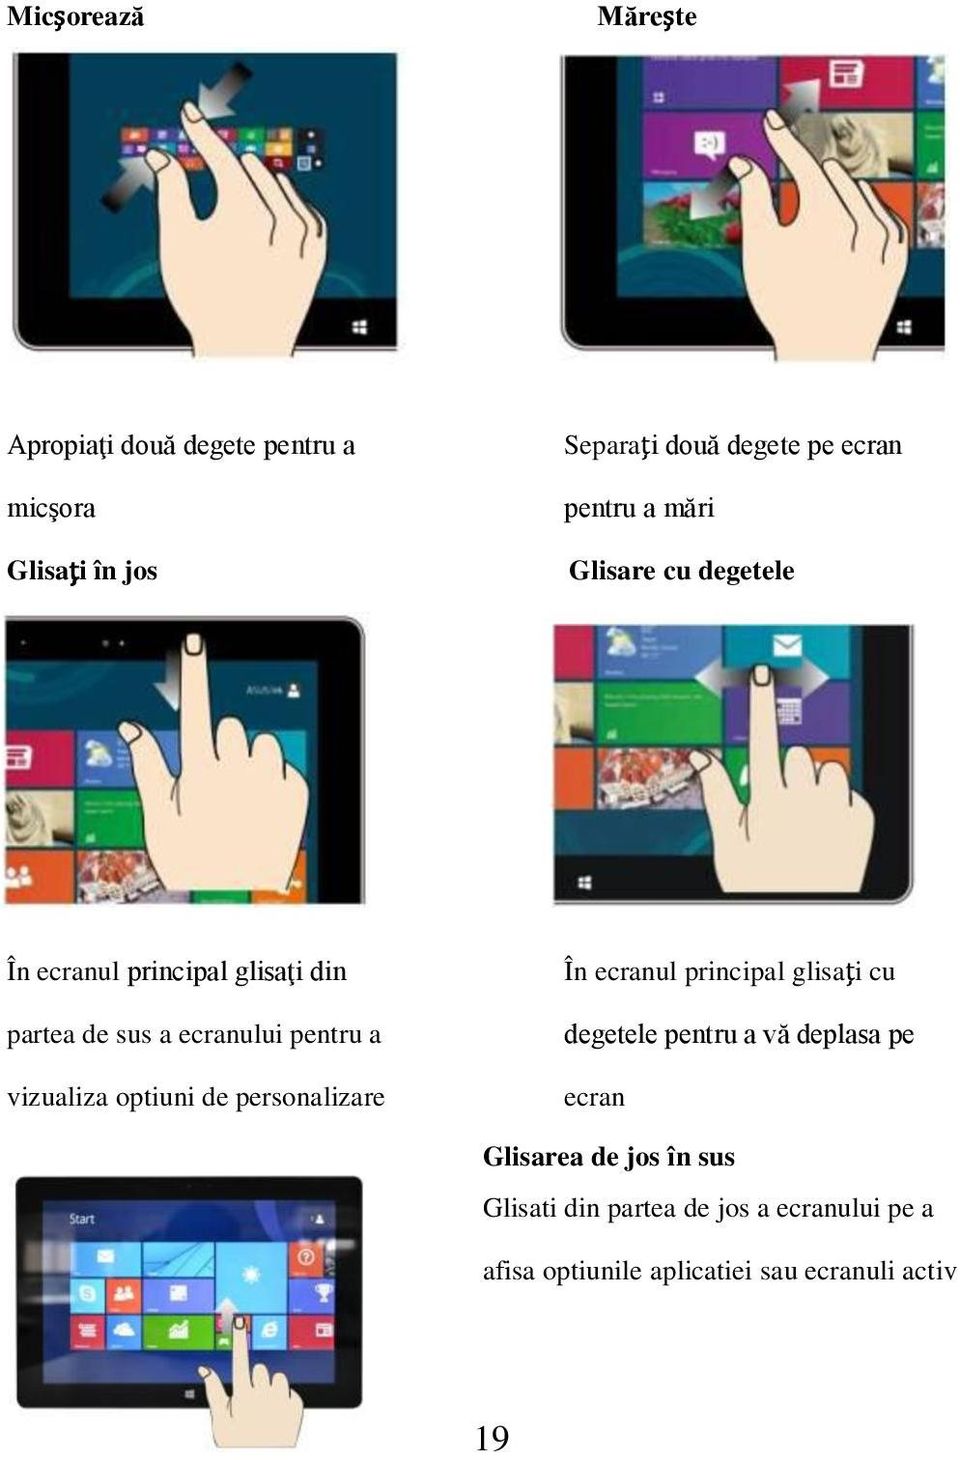 vizualiza optiuni de personalizare În ecranul principal glisaţi cu degetele pentru a vă deplasa pe ecran